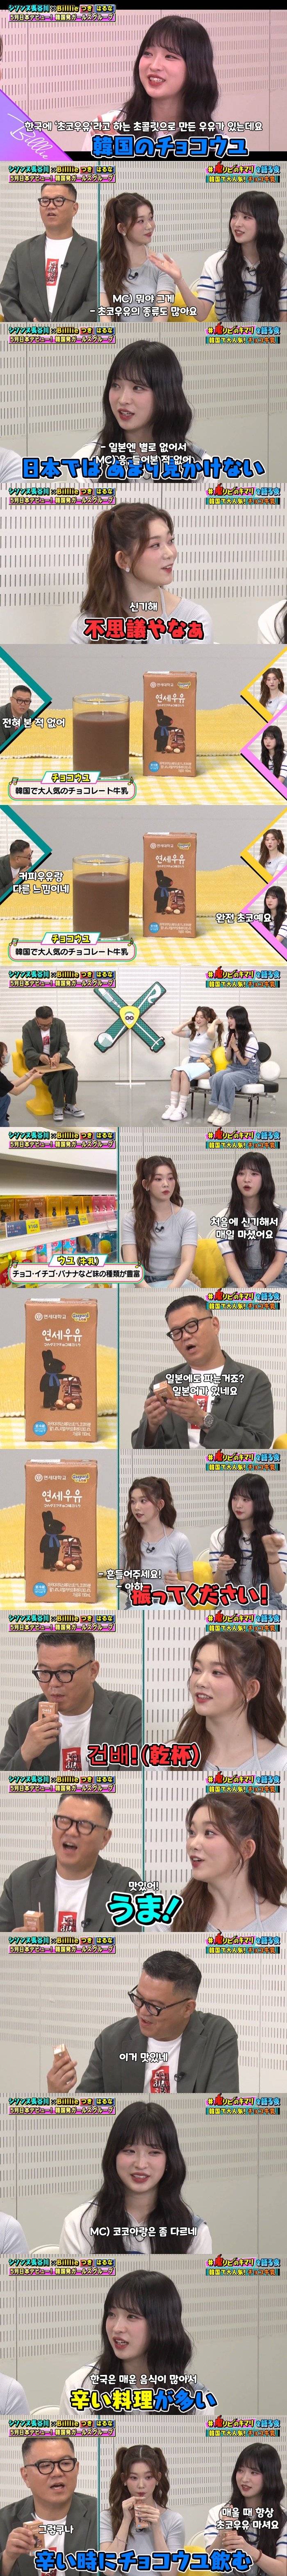 일본 방송에서 초코우유 소개하는 아이돌